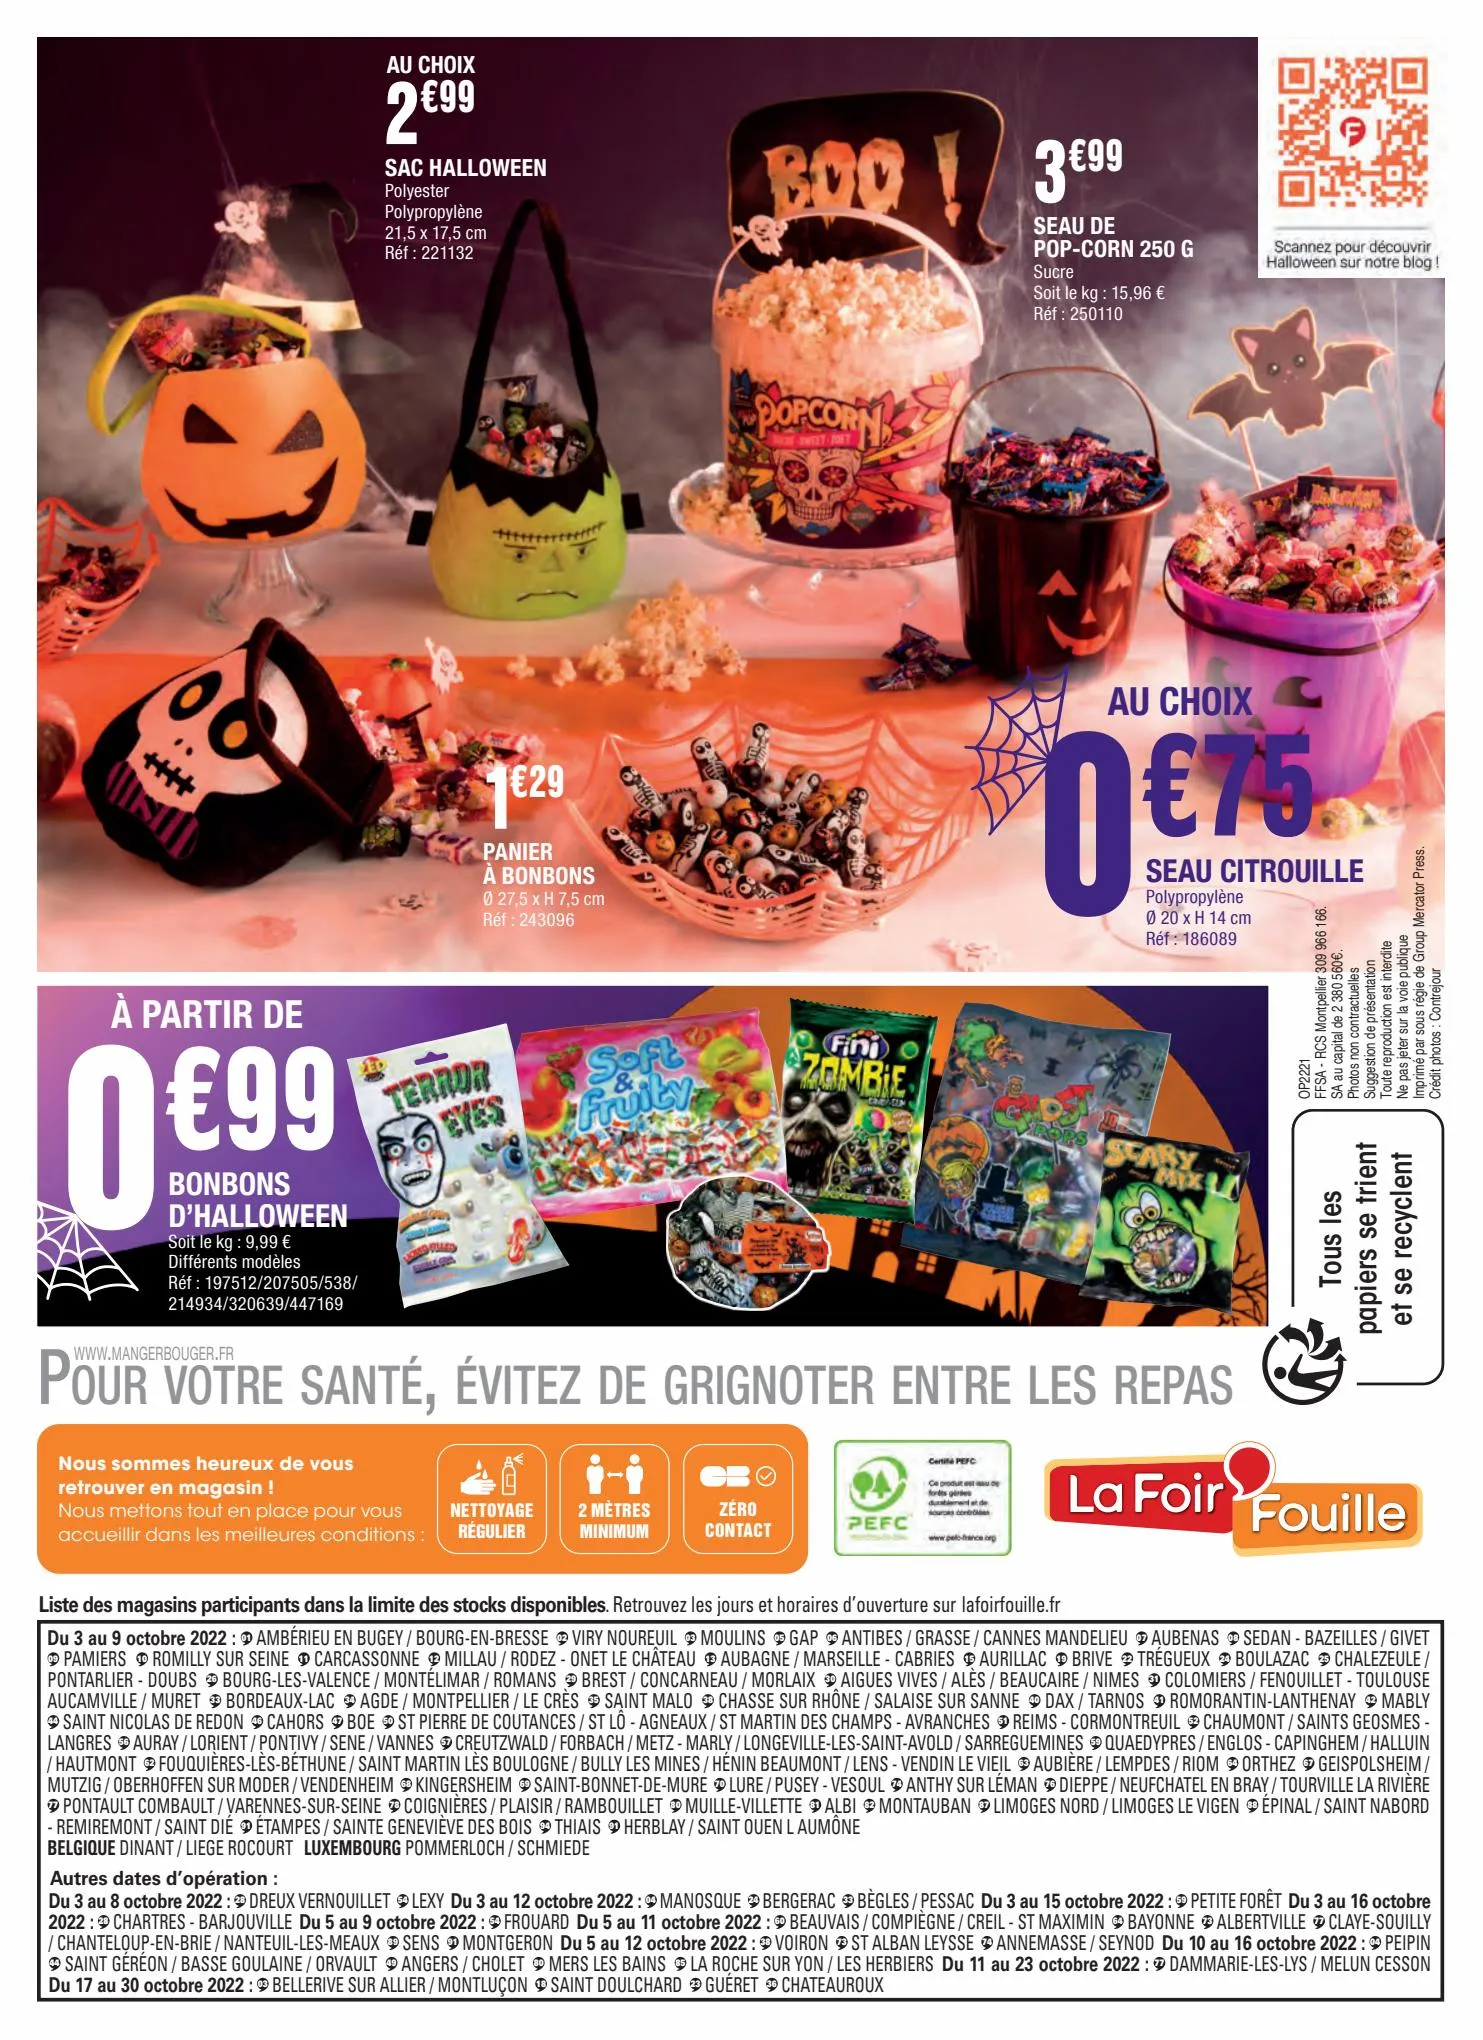 Catalogue Halloween, c'est drôlement effrayant !, page 00012